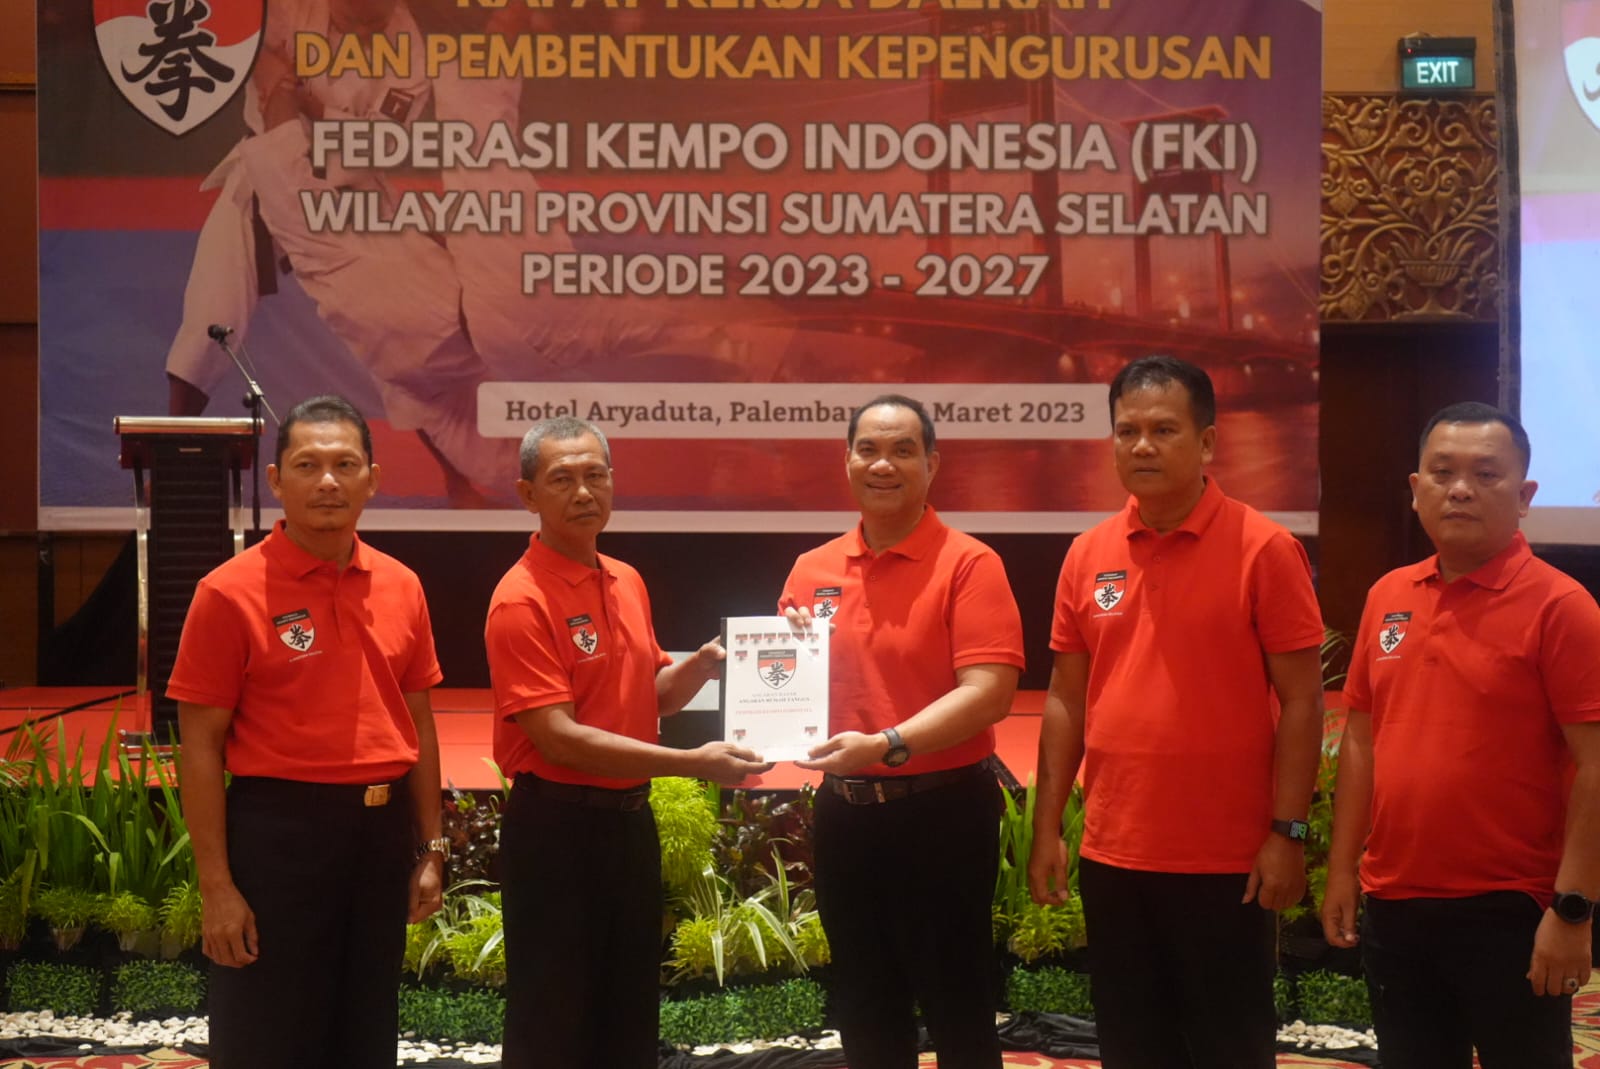 Dr. Ilham Djaya Resmi Dikukuhkan sebagai Ketua Federasi Kempo Indonesia Wilayah Sumatera Selatan